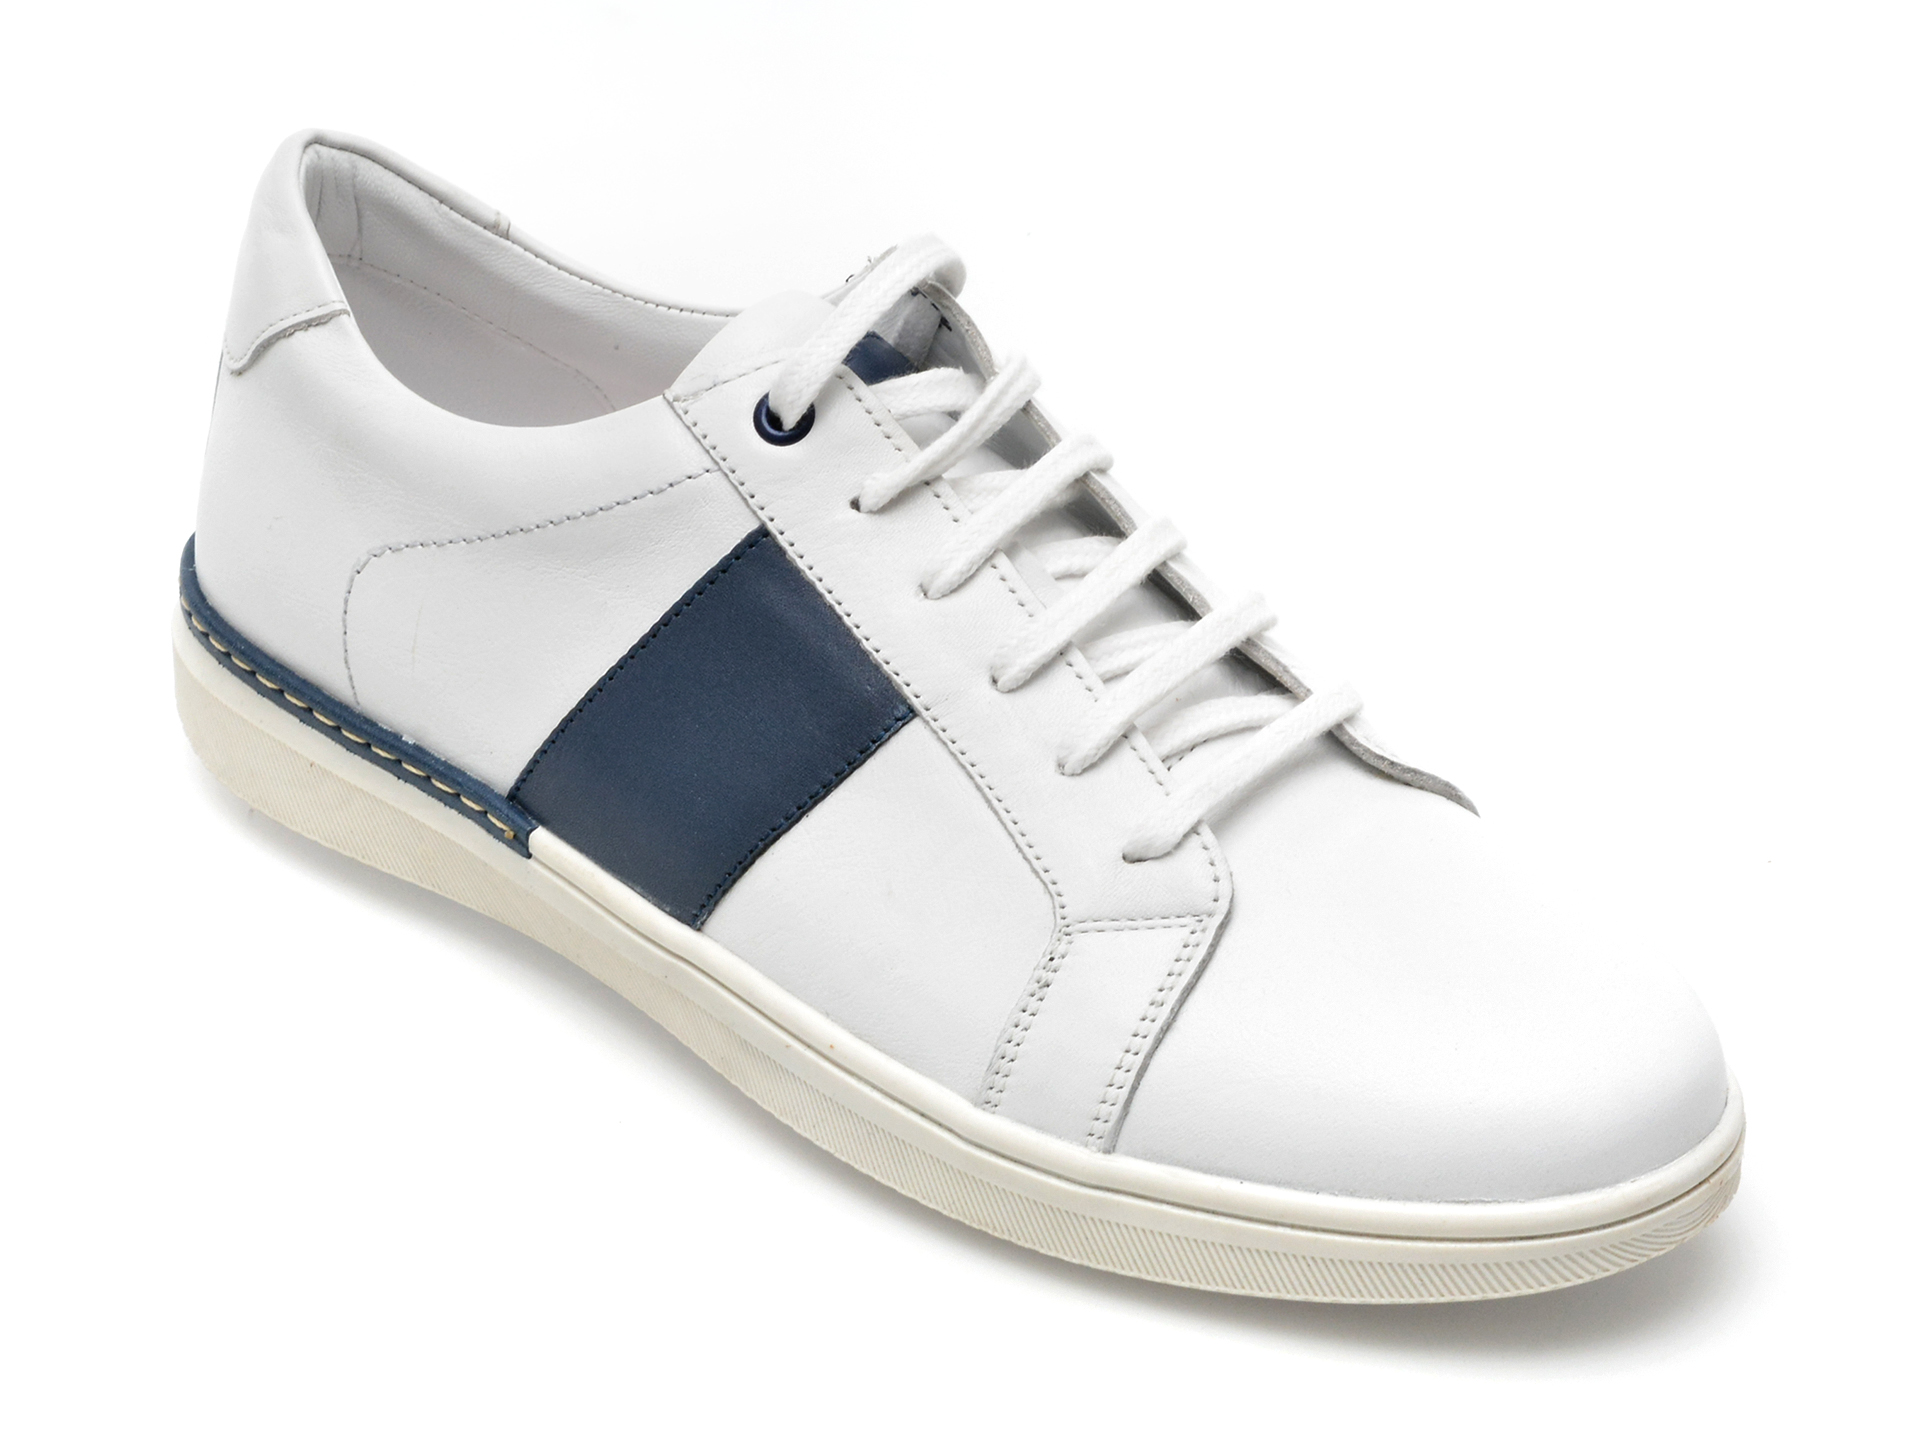 Pantofi sport OTTER albi, 3425, din piele naturala /sale